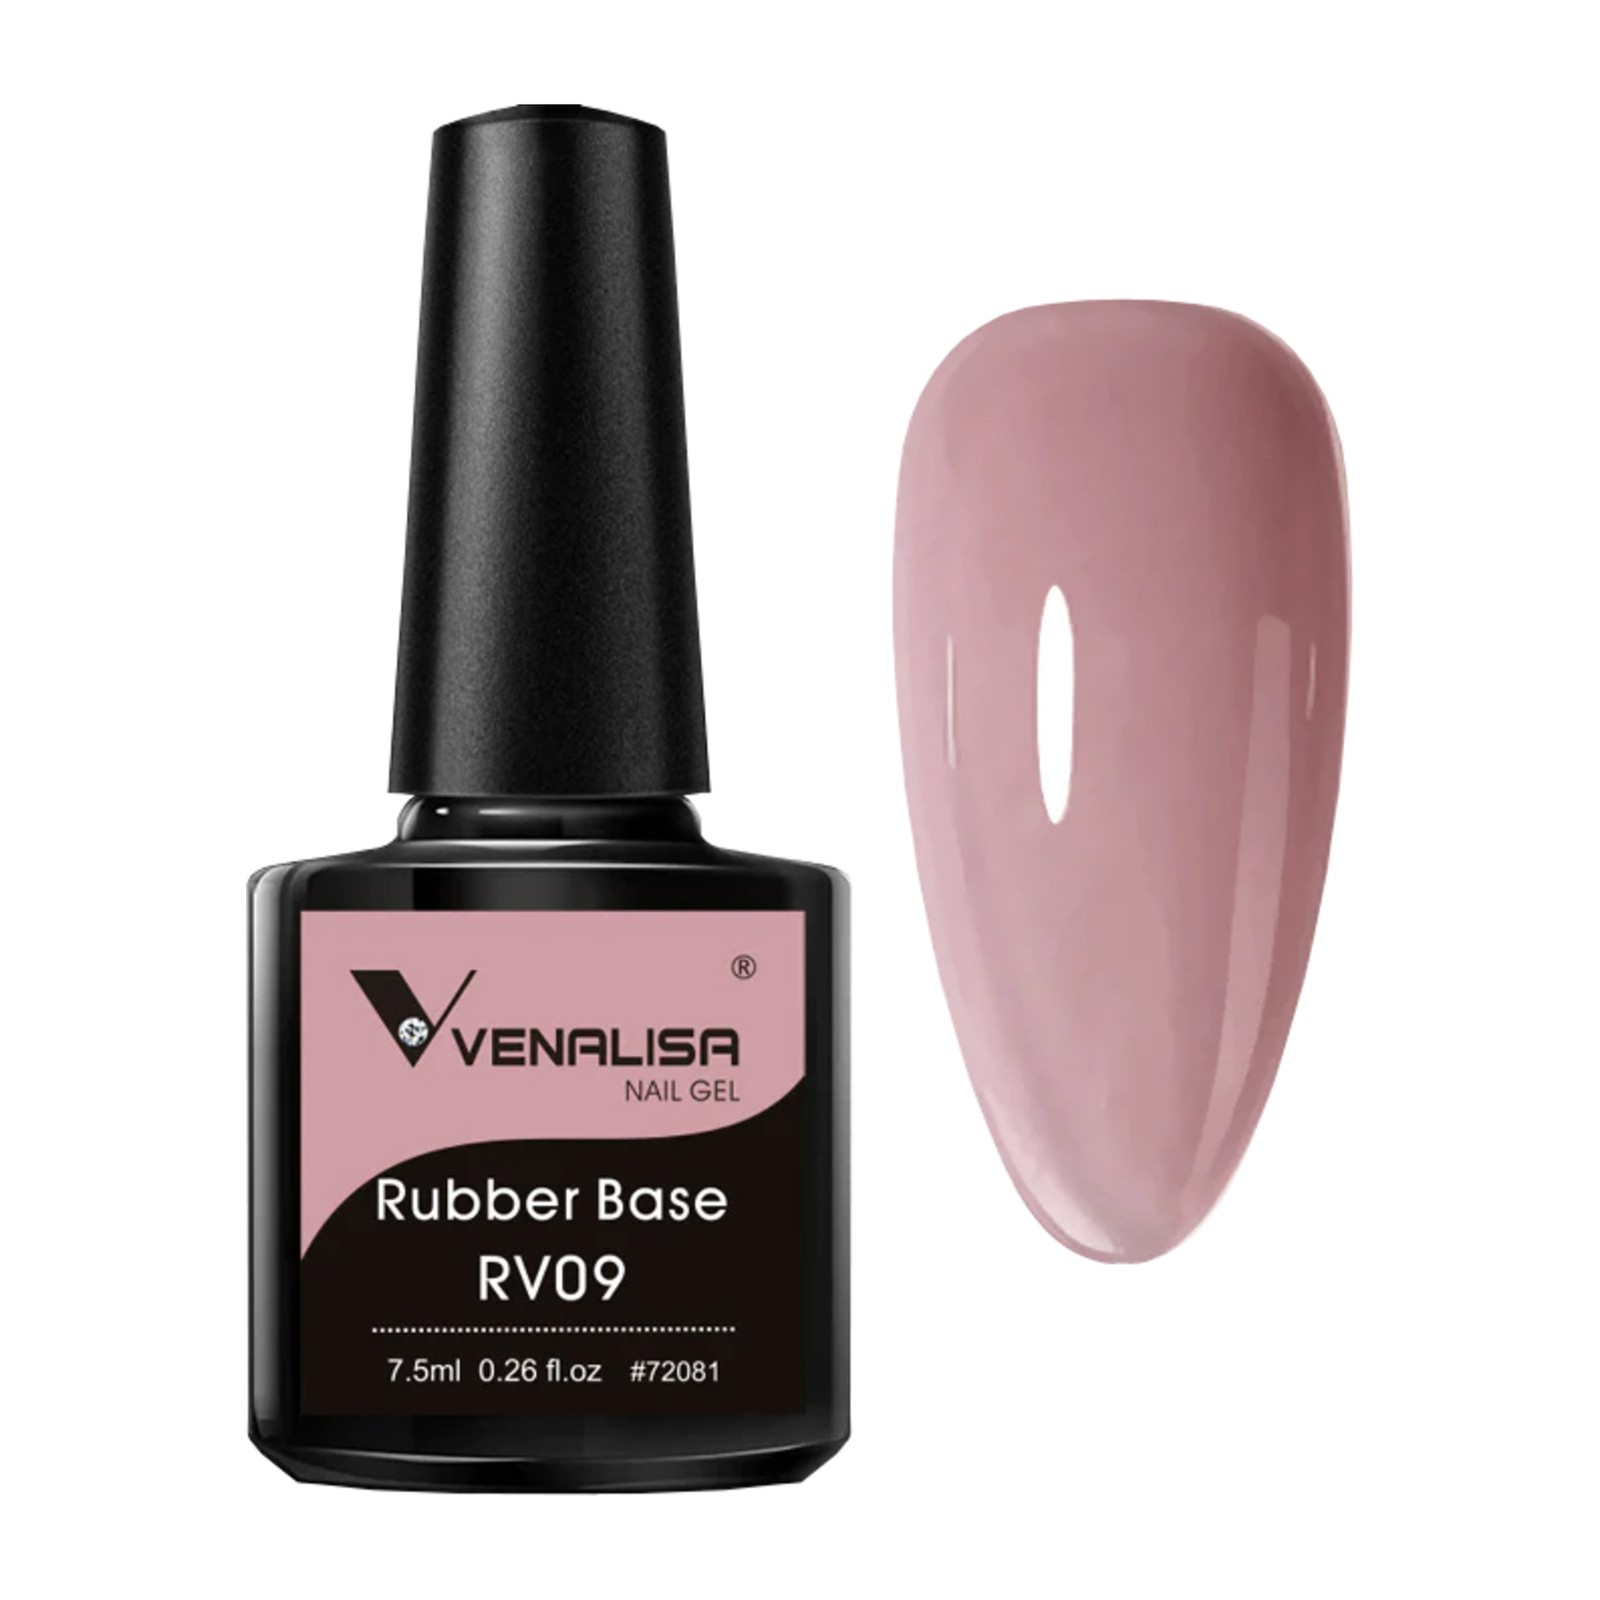 Venalisa - Rubber Base RV09 - 7.5ml